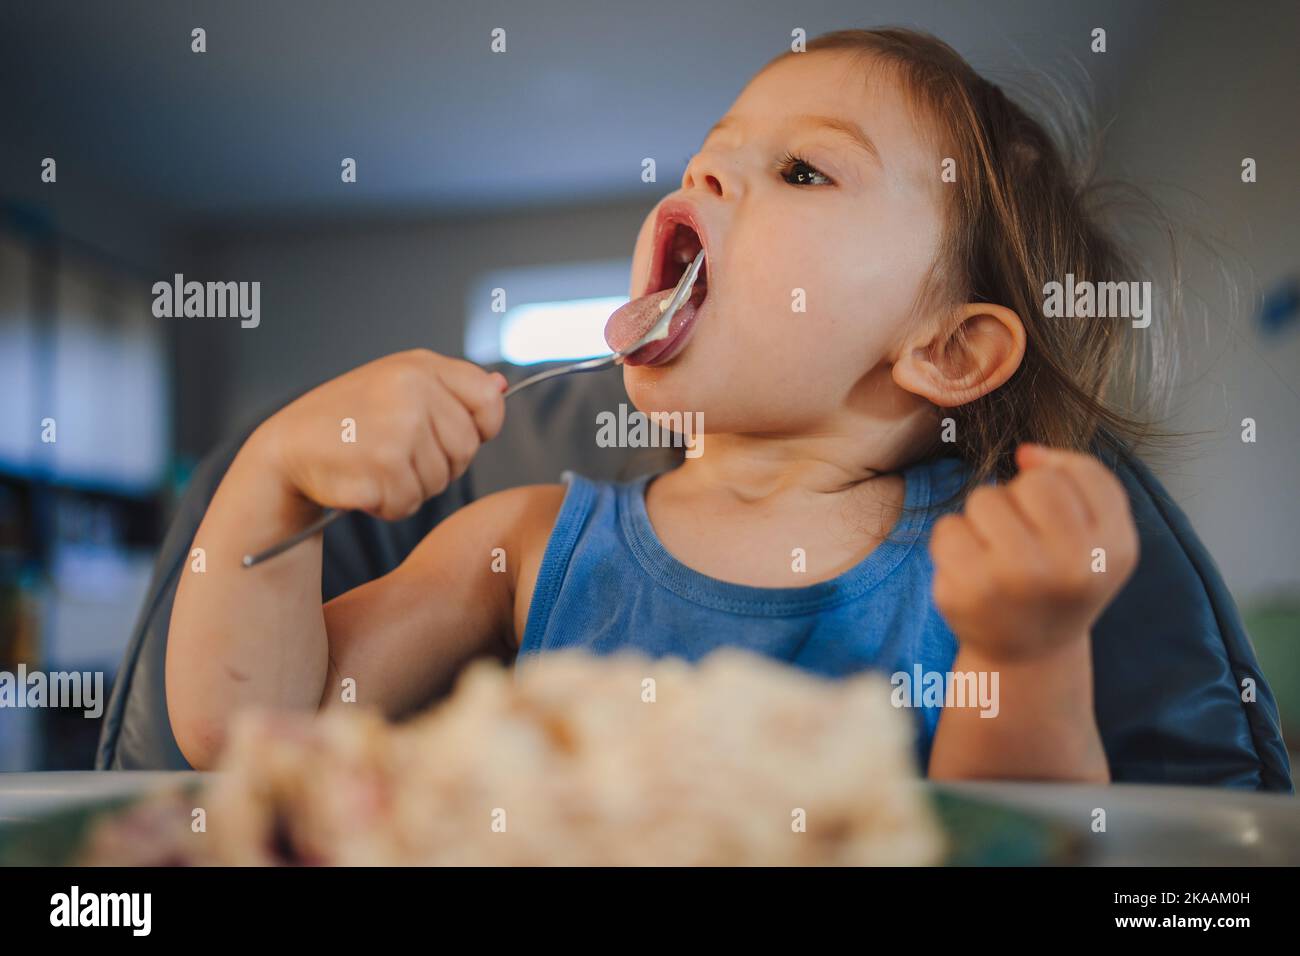 Portrait bébé caucasien fille mangeant de la nourriture de l'assiette à l'aide de la fourchette, assis chaise haute, auto-alimentation. Une alimentation saine pour les enfants. Repas des tout-petits Banque D'Images